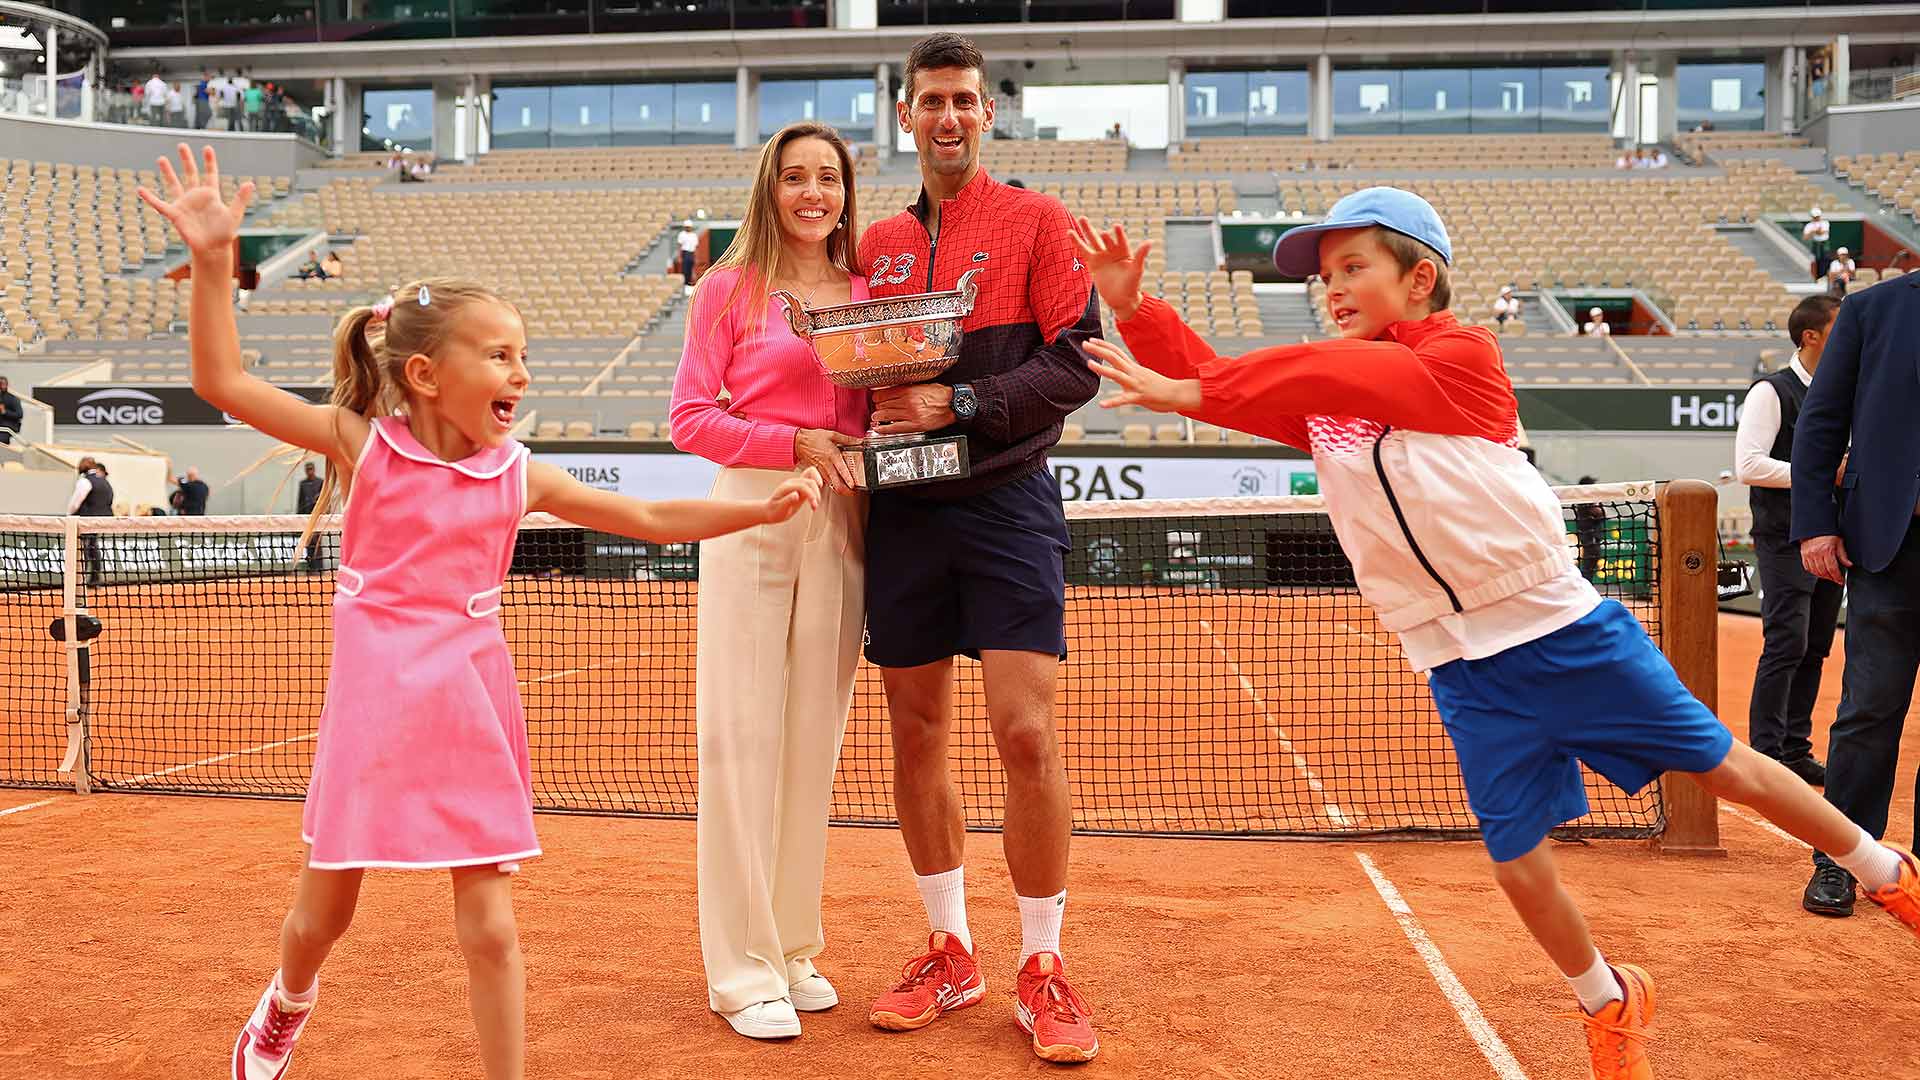 Novak Djokovic ganha a final masculina de Roland Garros e chega ao 23° slam  - Surto Olímpico